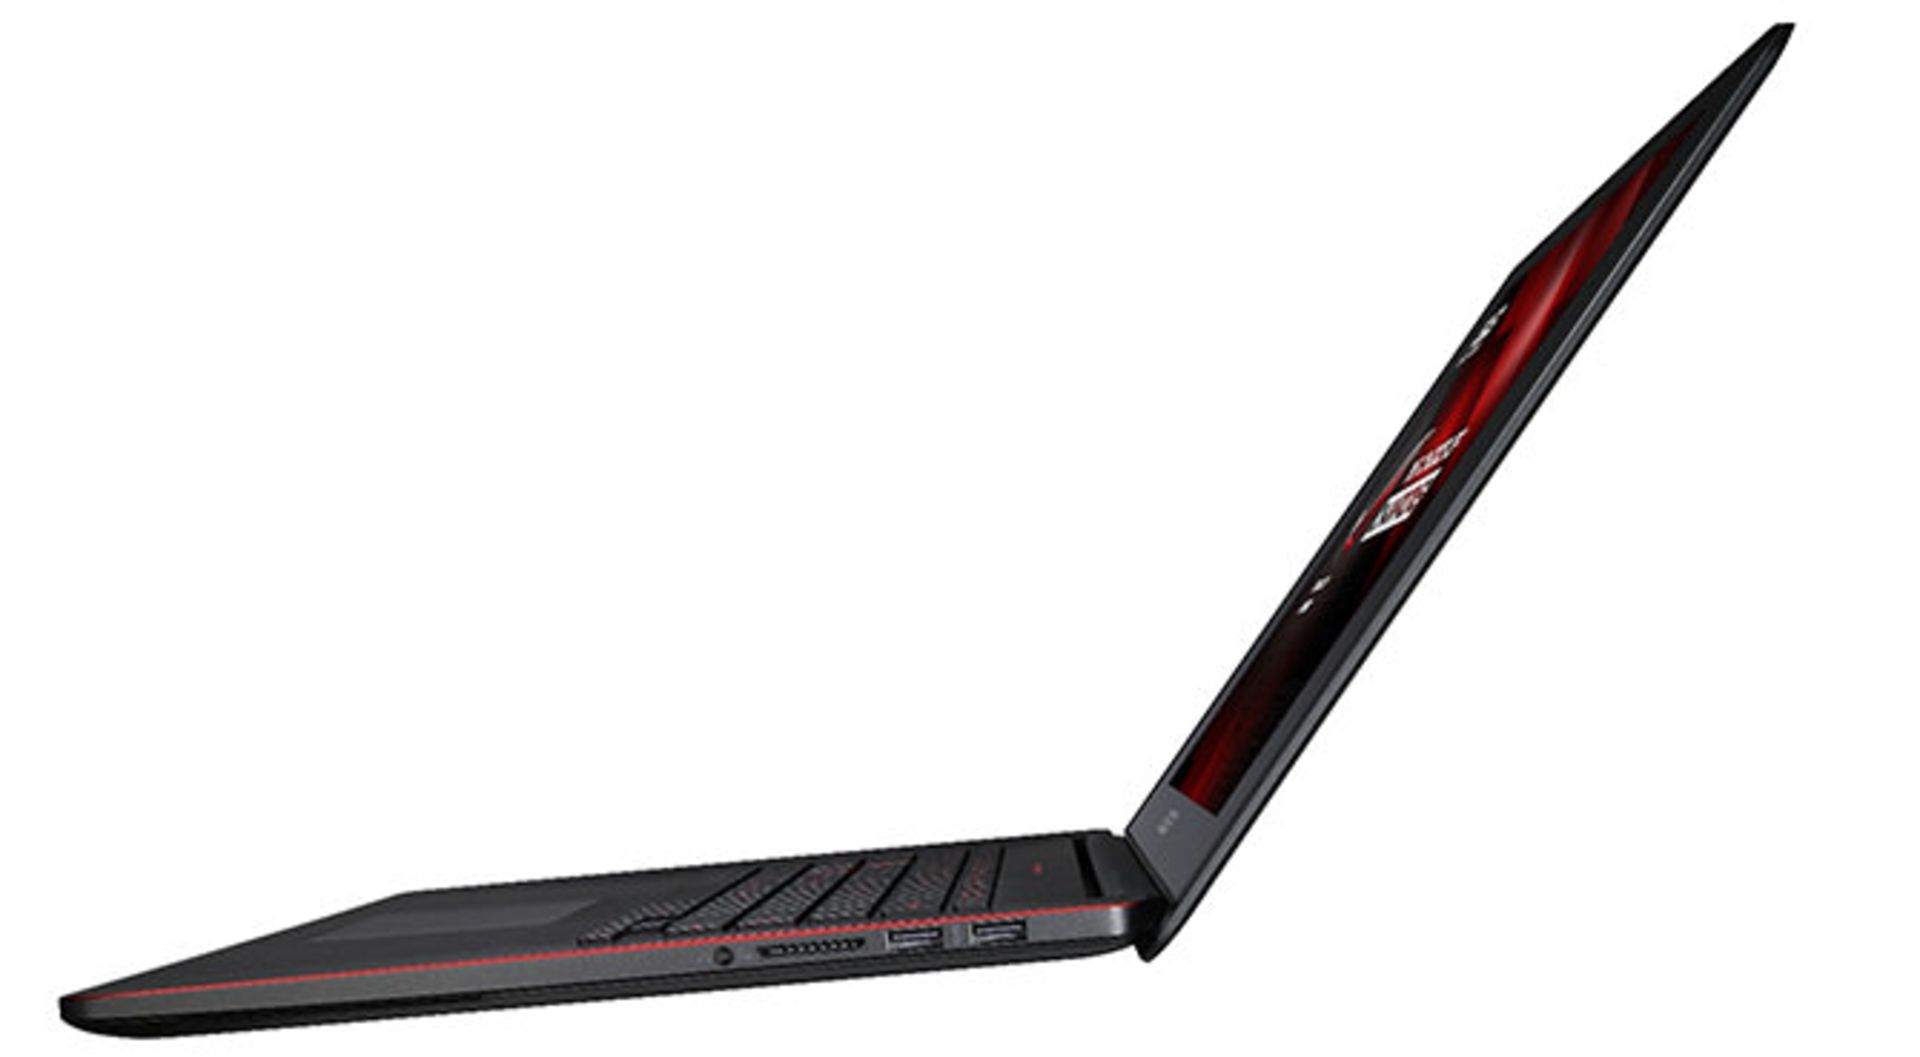 ASUS-ROG-GX500-Gaming-Notebook